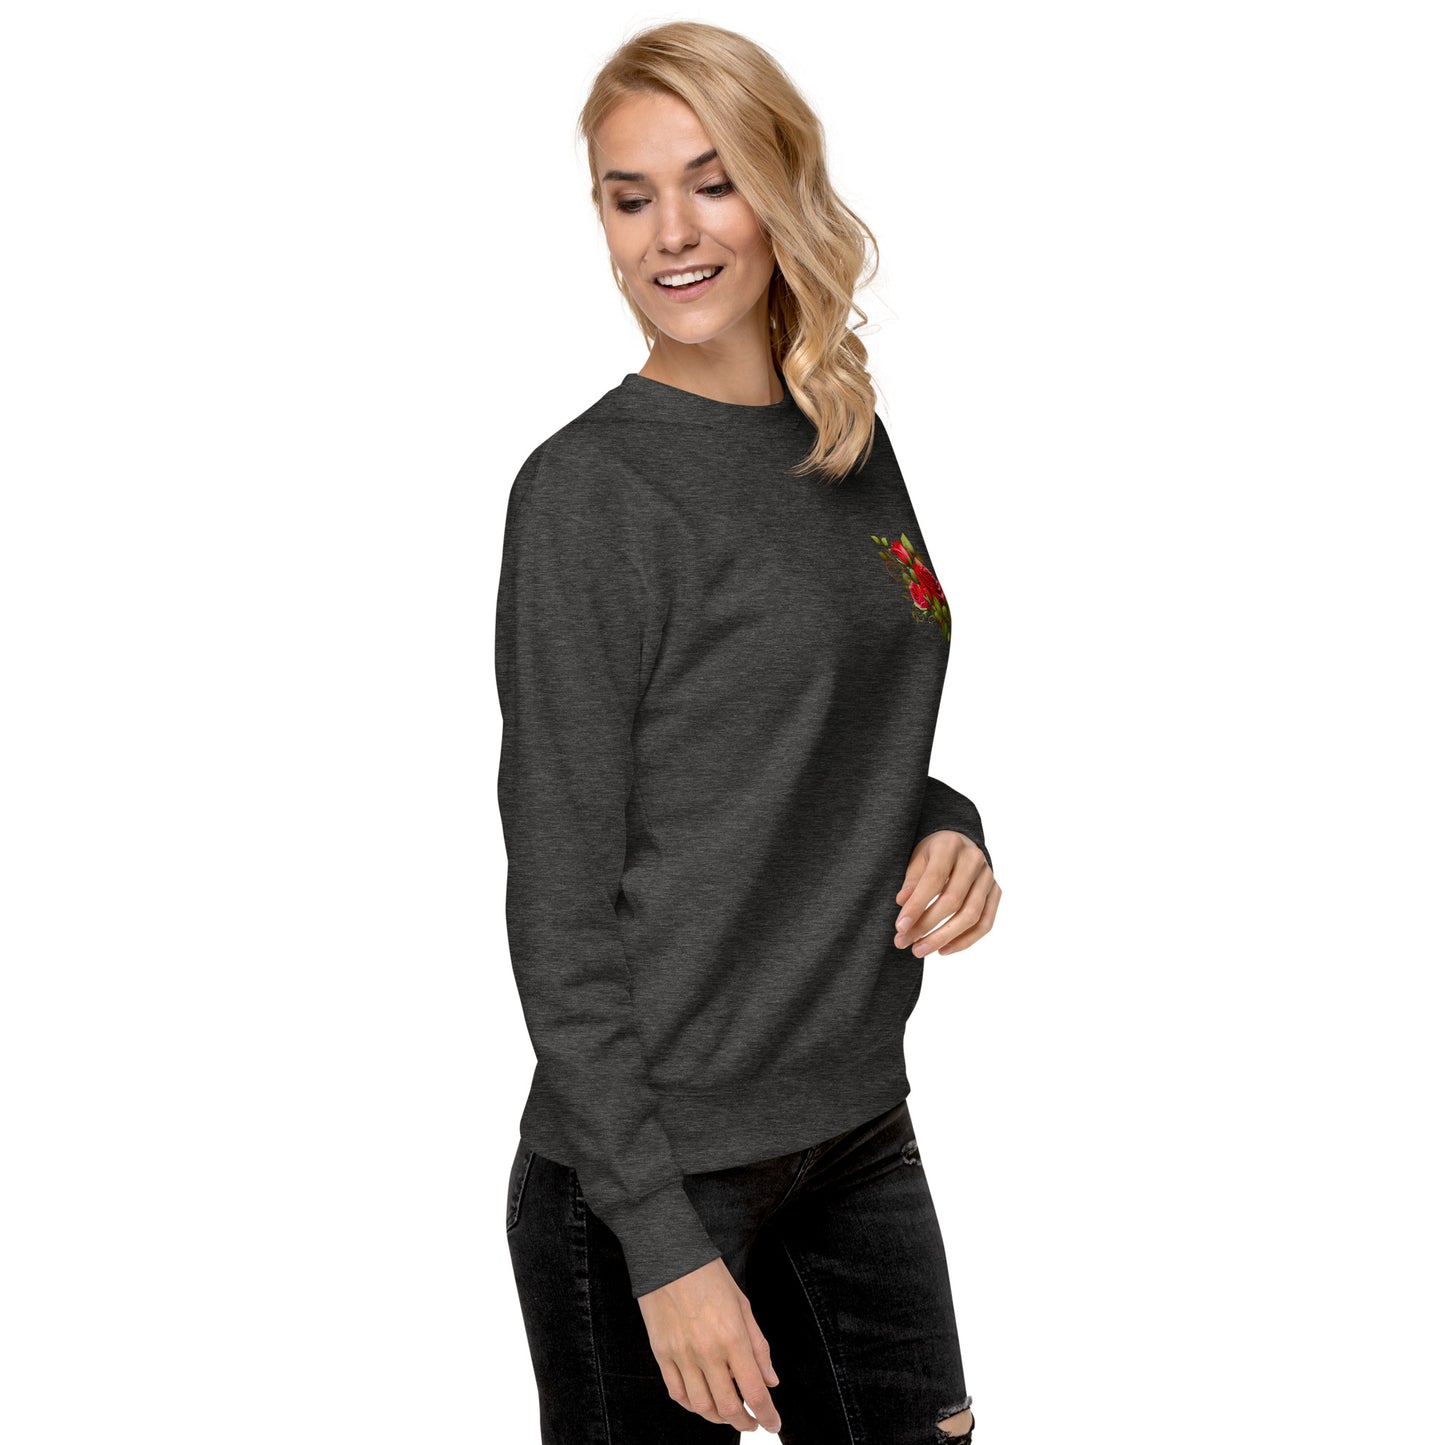 Rose print Unisex Premium Sweatshirt